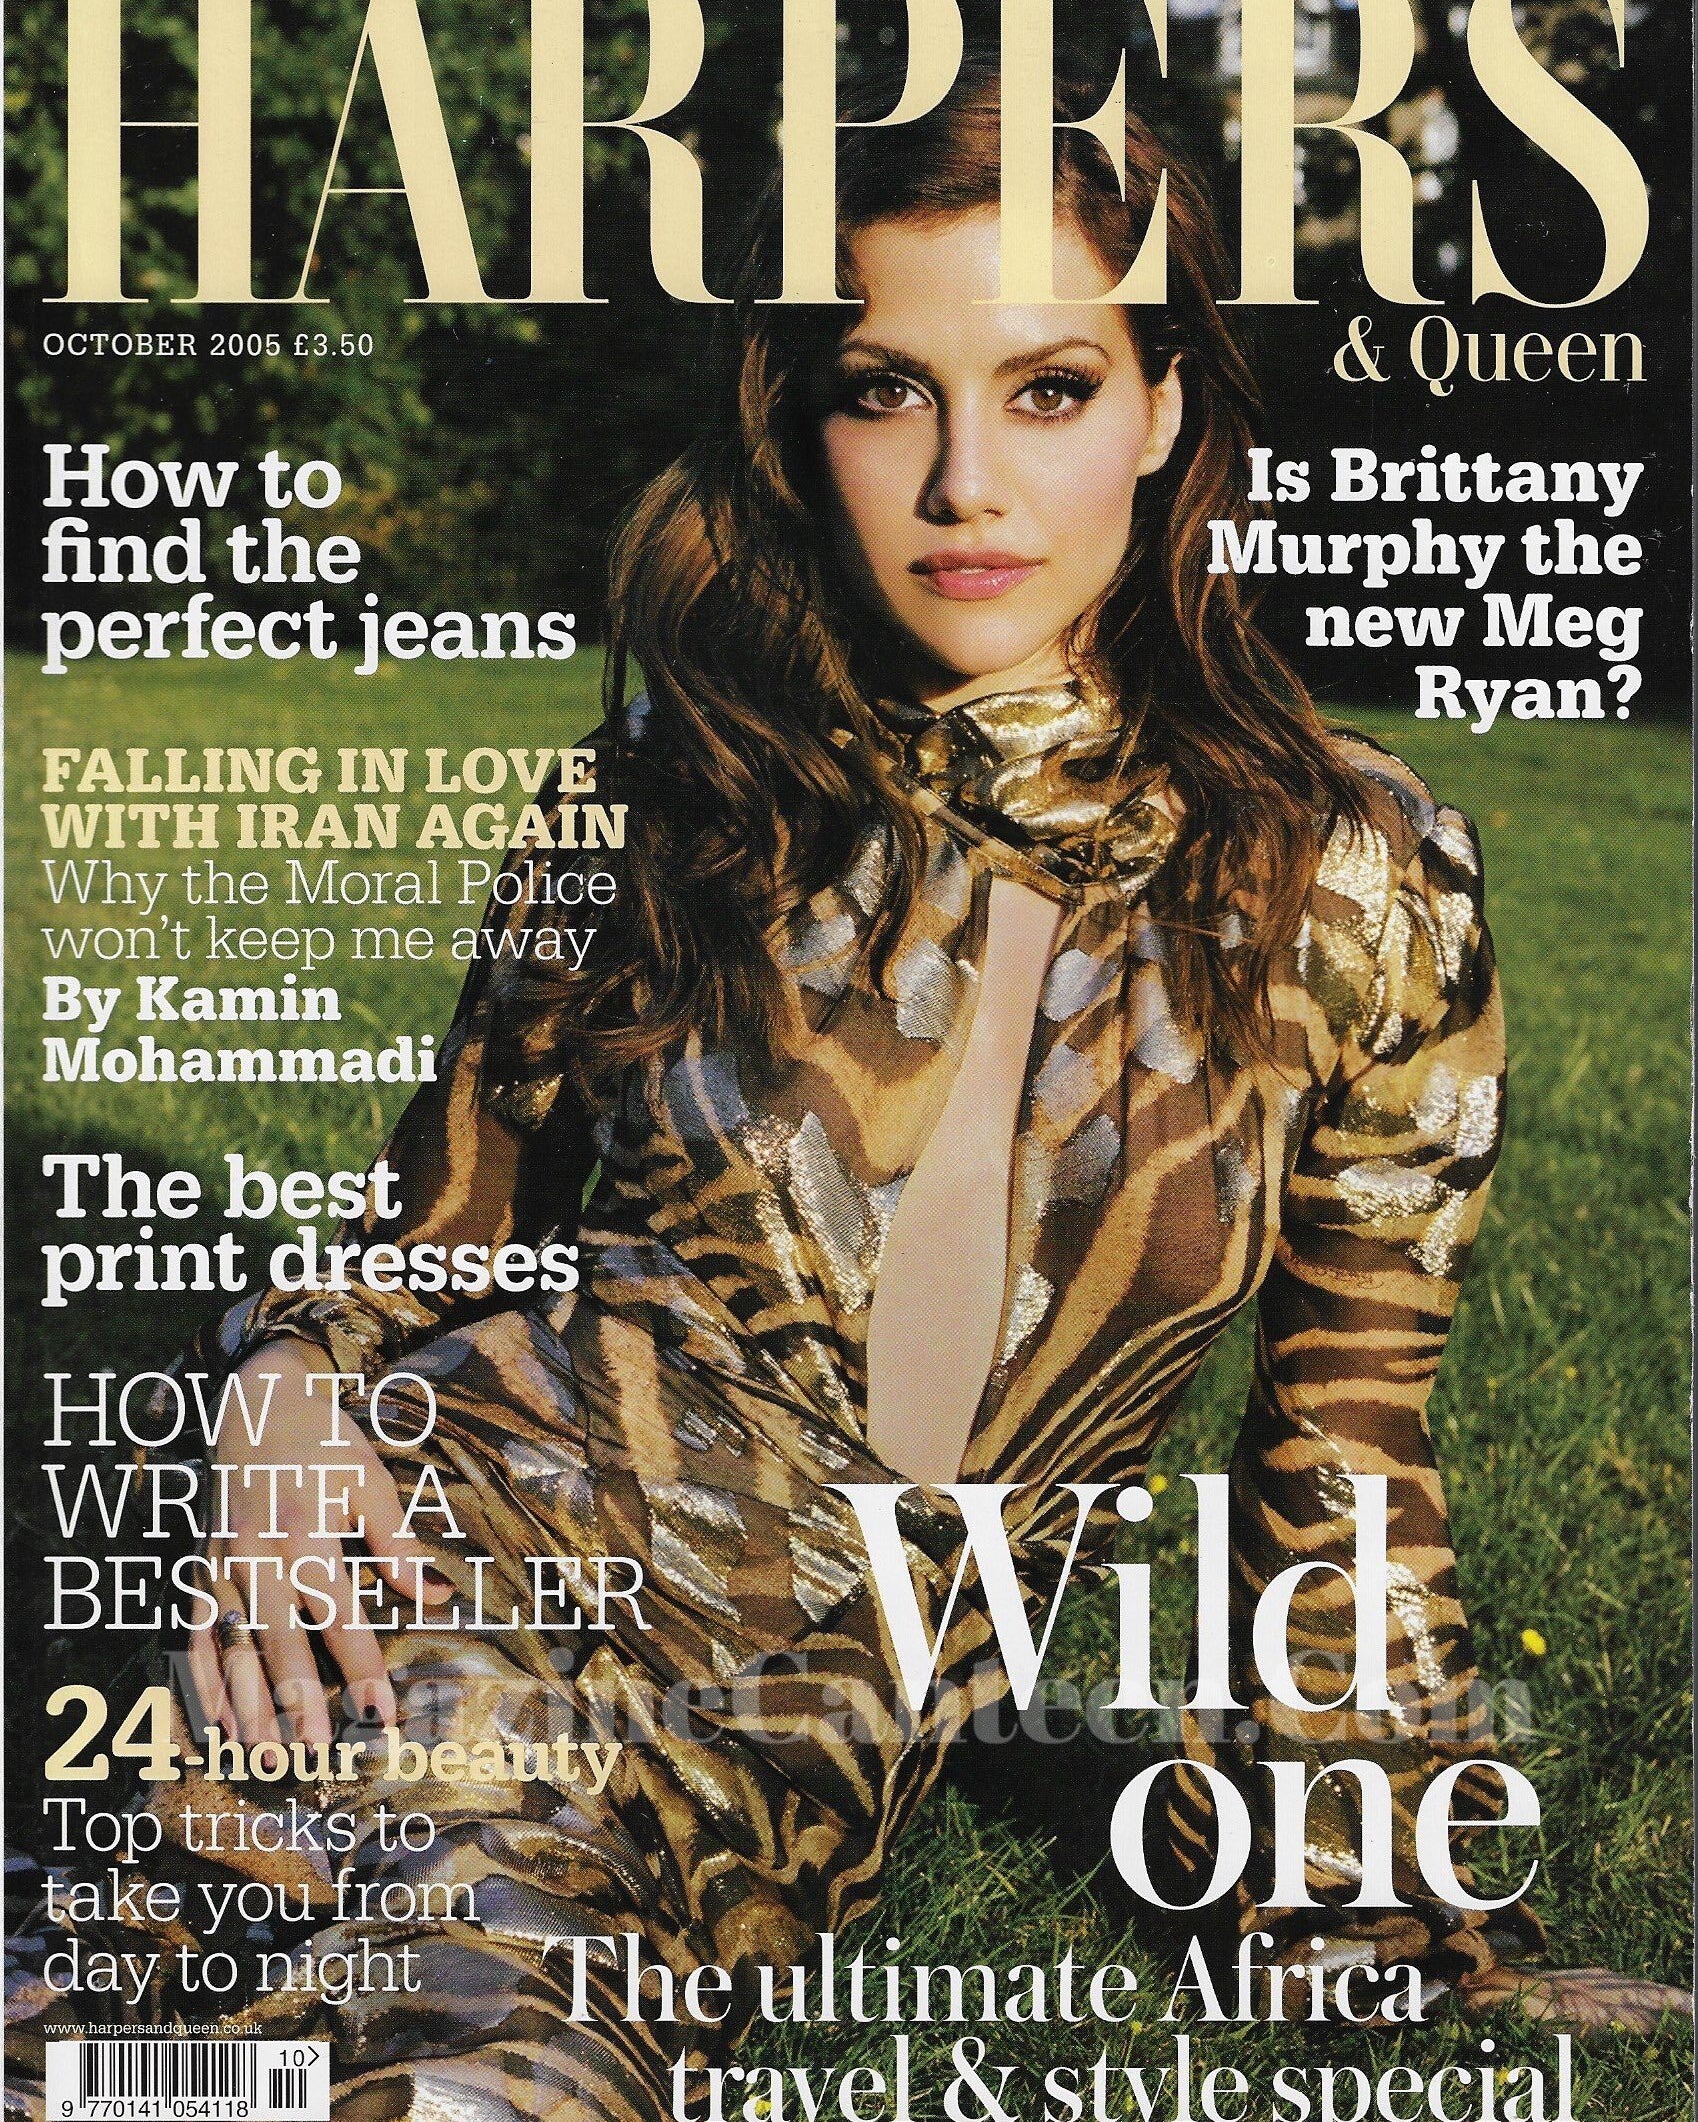  Harpers & Queen Magazine - Brittany Murphy rosamund pike